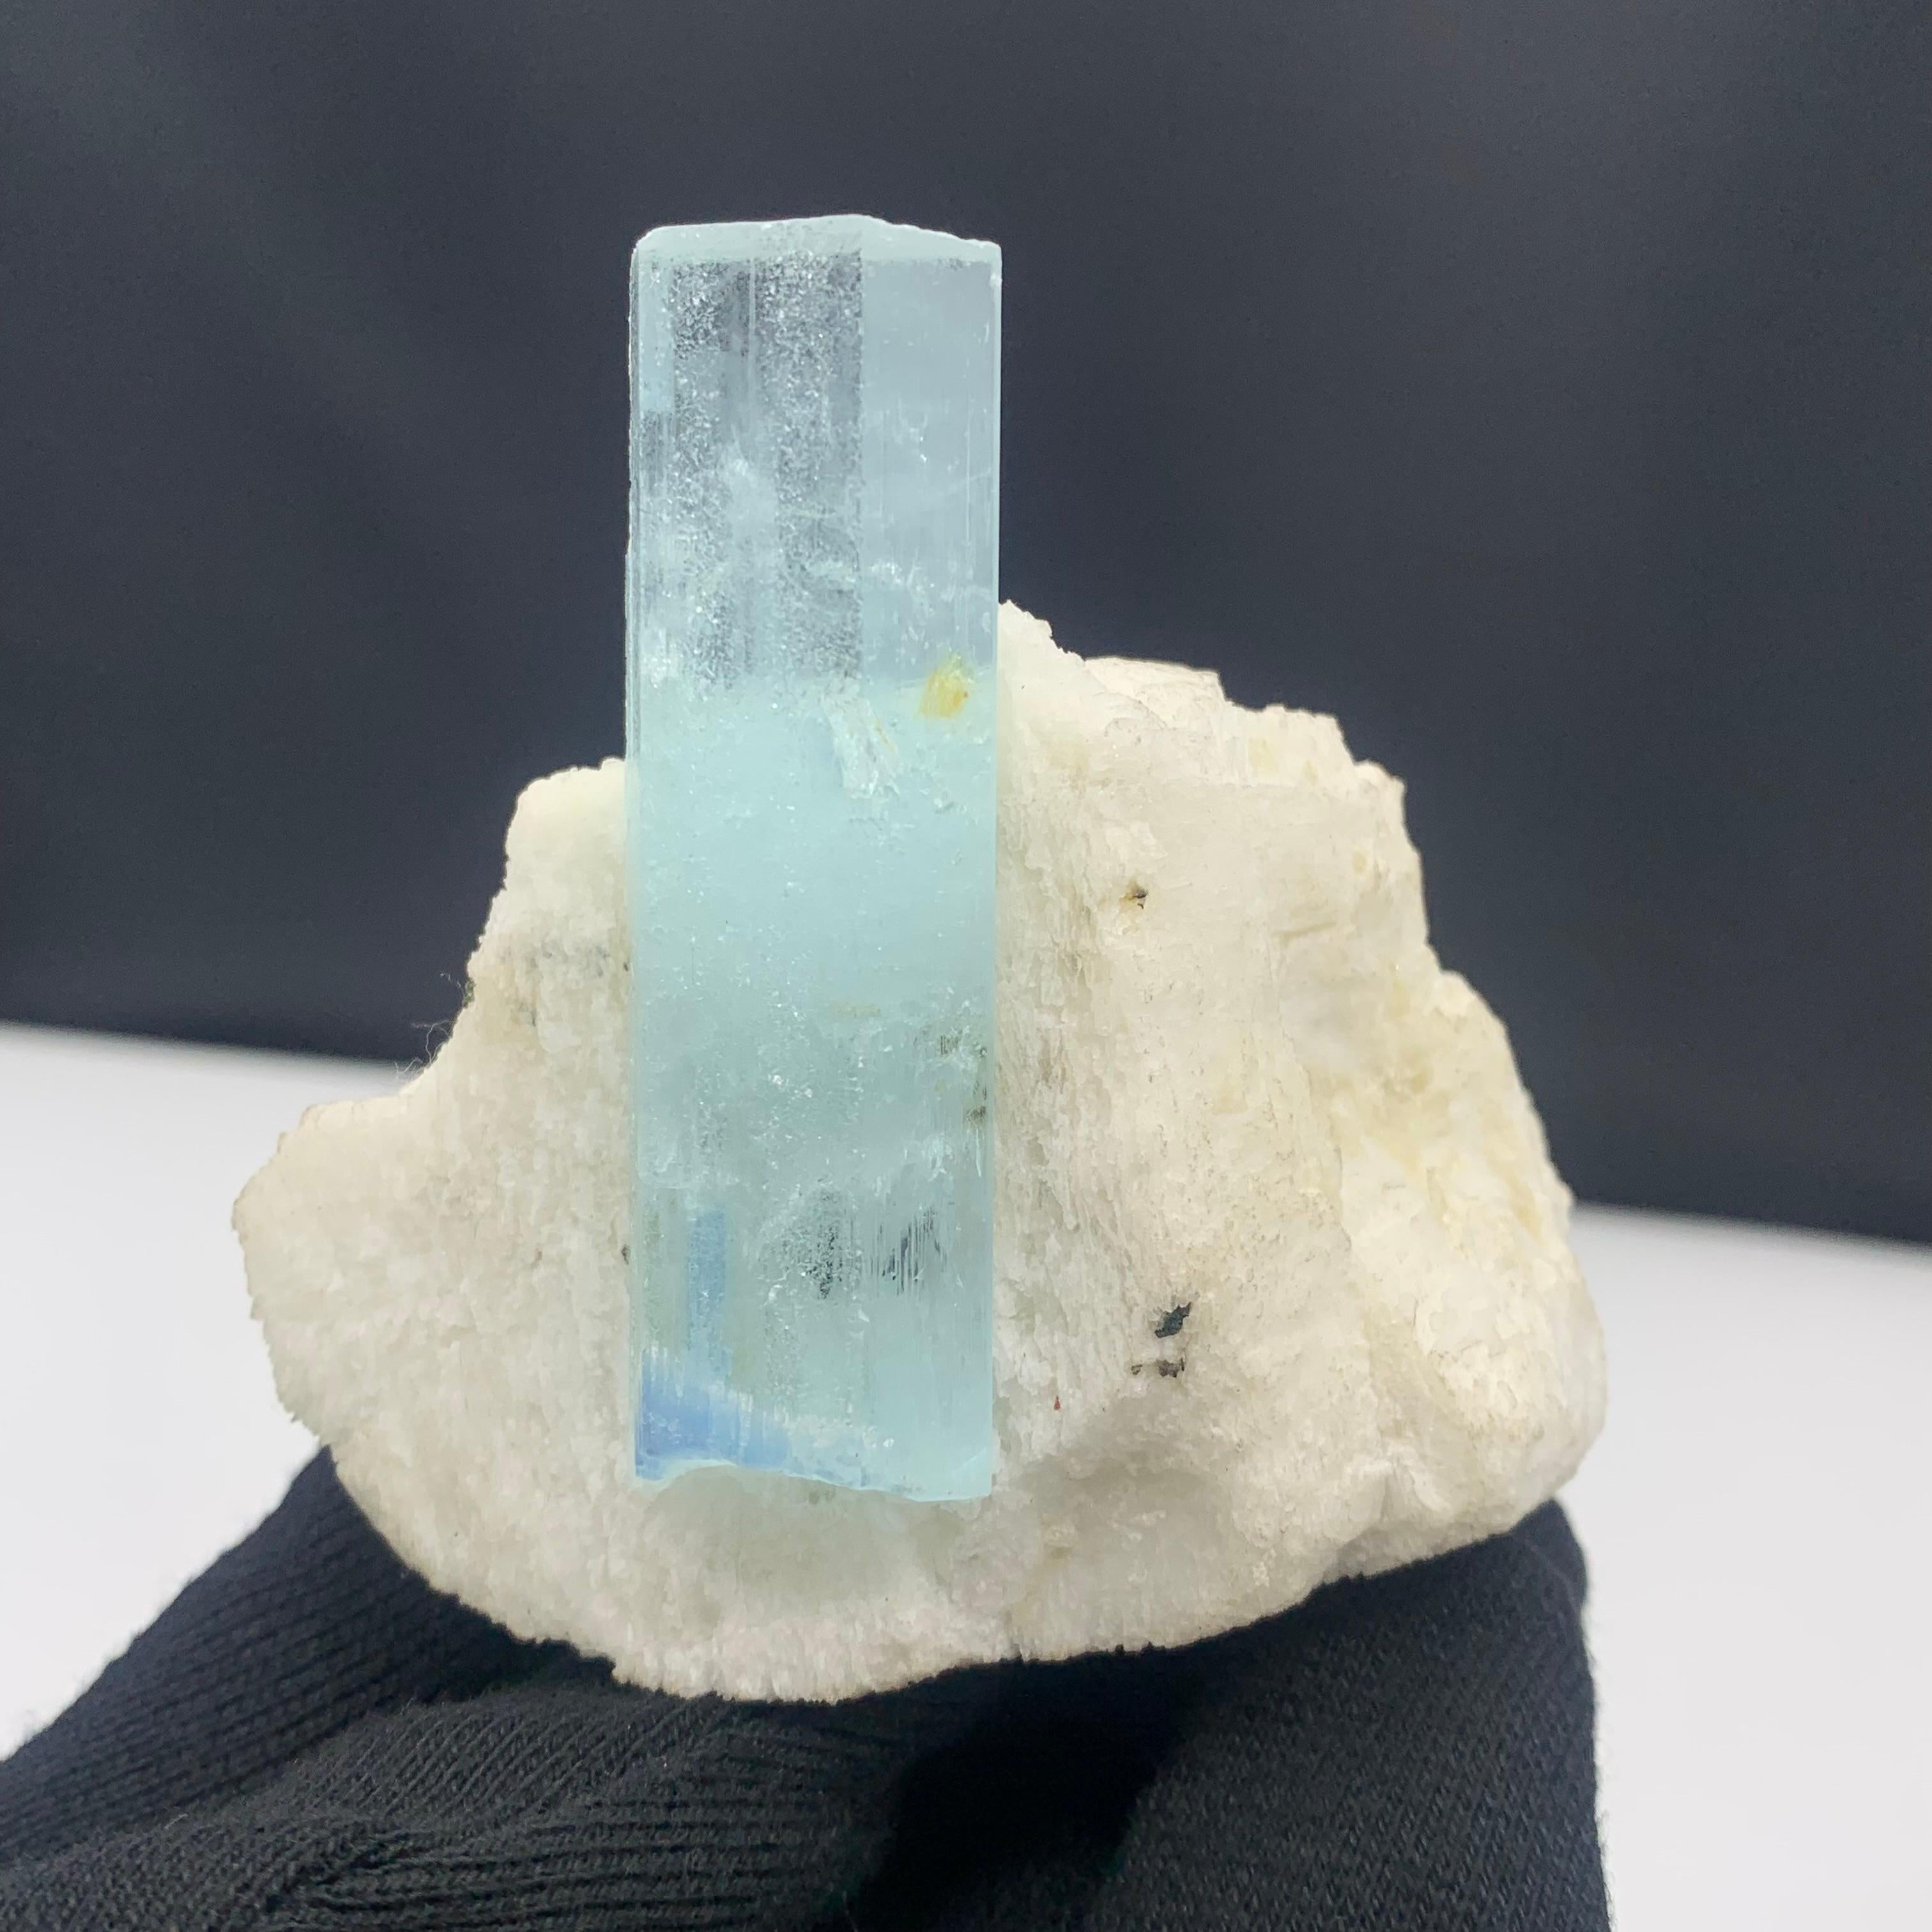 Rock Crystal 236.5 Gram Pretty Aquamarine Crystal On Feldspar From Shigar Valley, Pakistan  For Sale